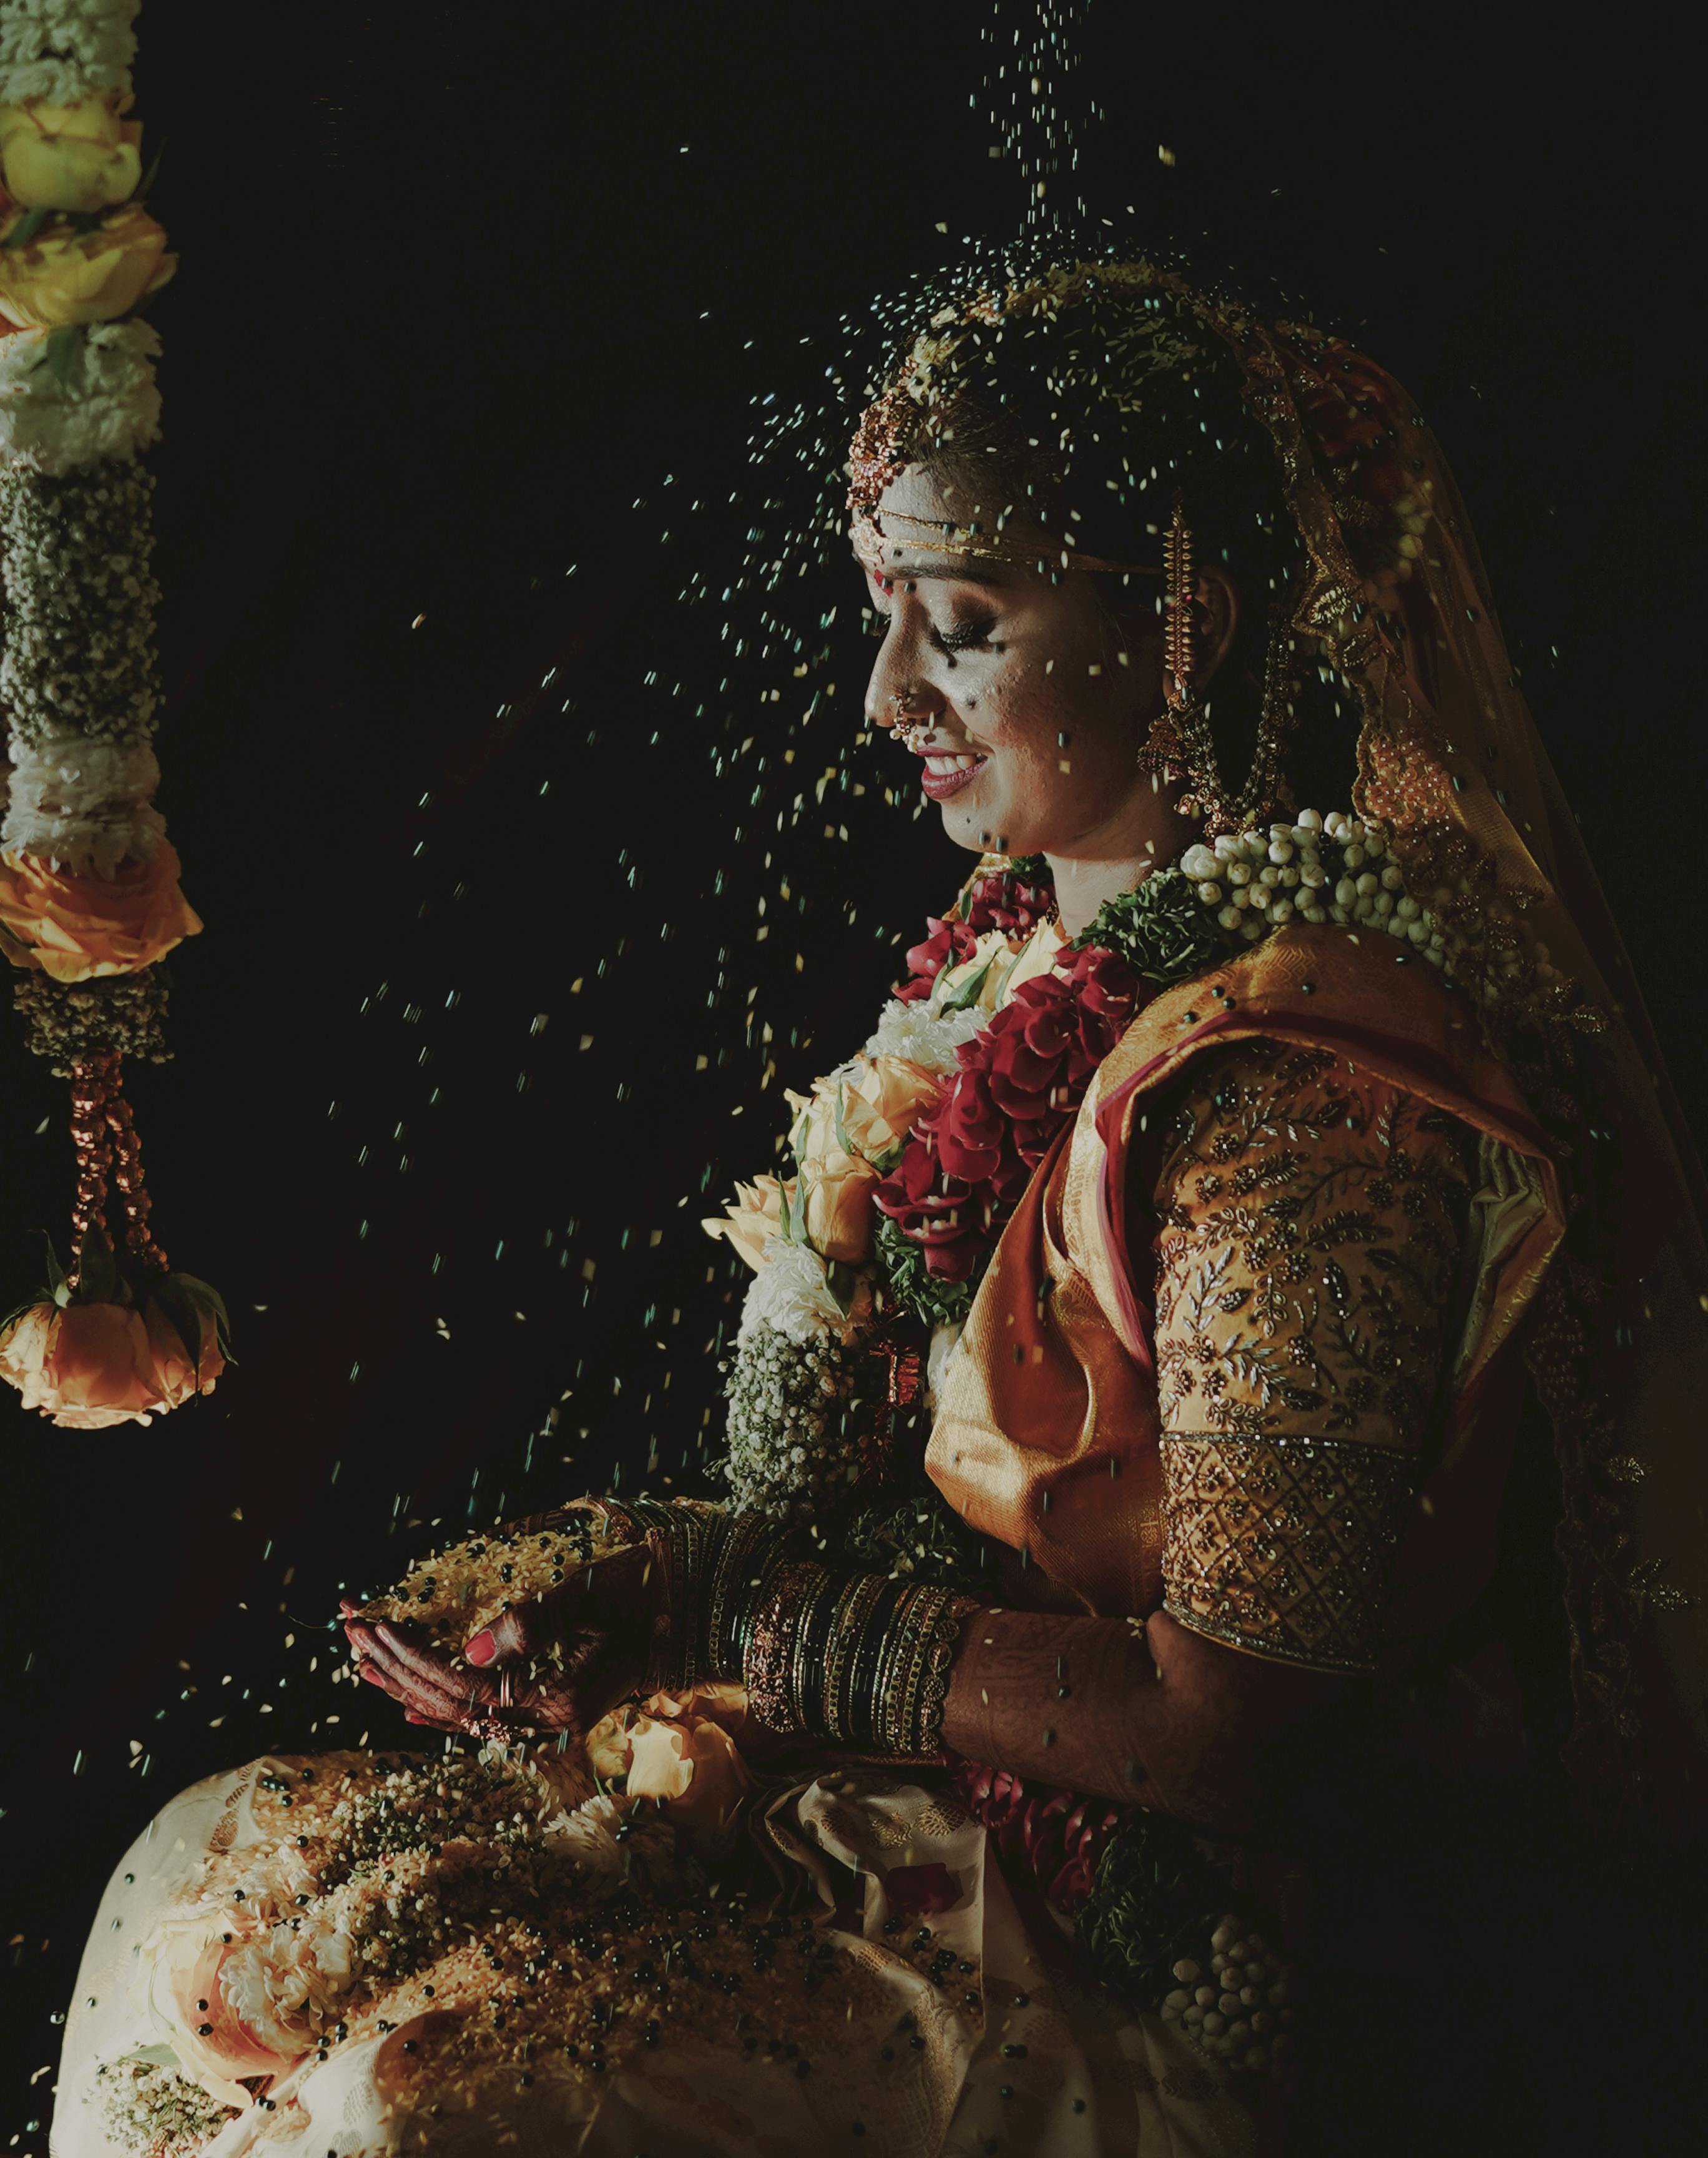 BENGALI BRIDAL MAKEUP WORK BENGALI BRIDE ❤️ নিজেদের বিয়ে, বৌভাতে এরকম  সুন্দরভাবে সাজতে চাইলে CONTACT - 9836001153 #bridal… | Instagram